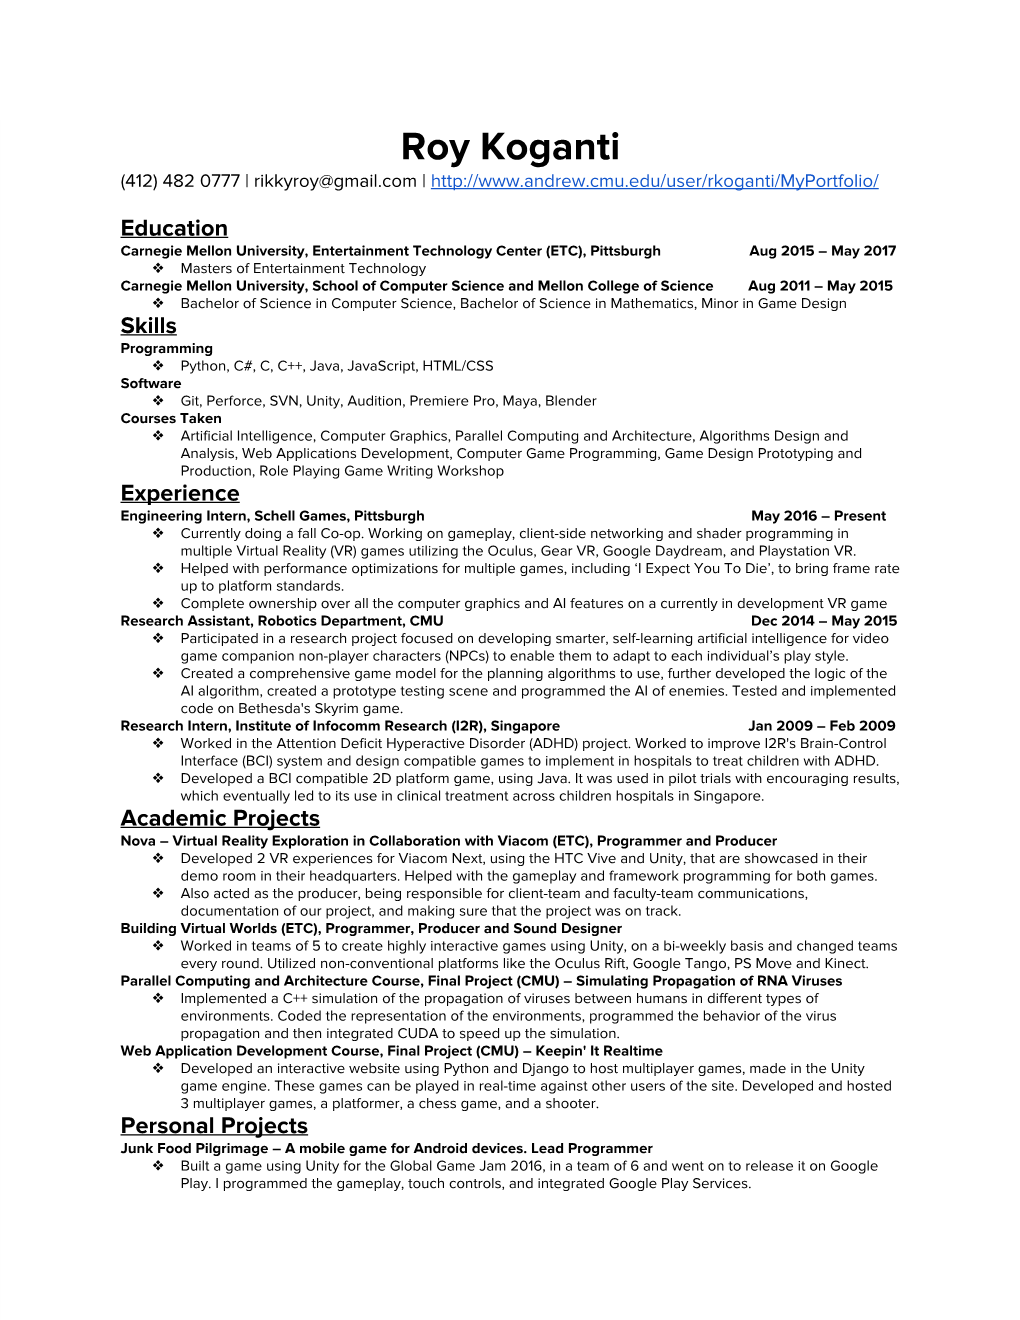 Roy Koganti Resume